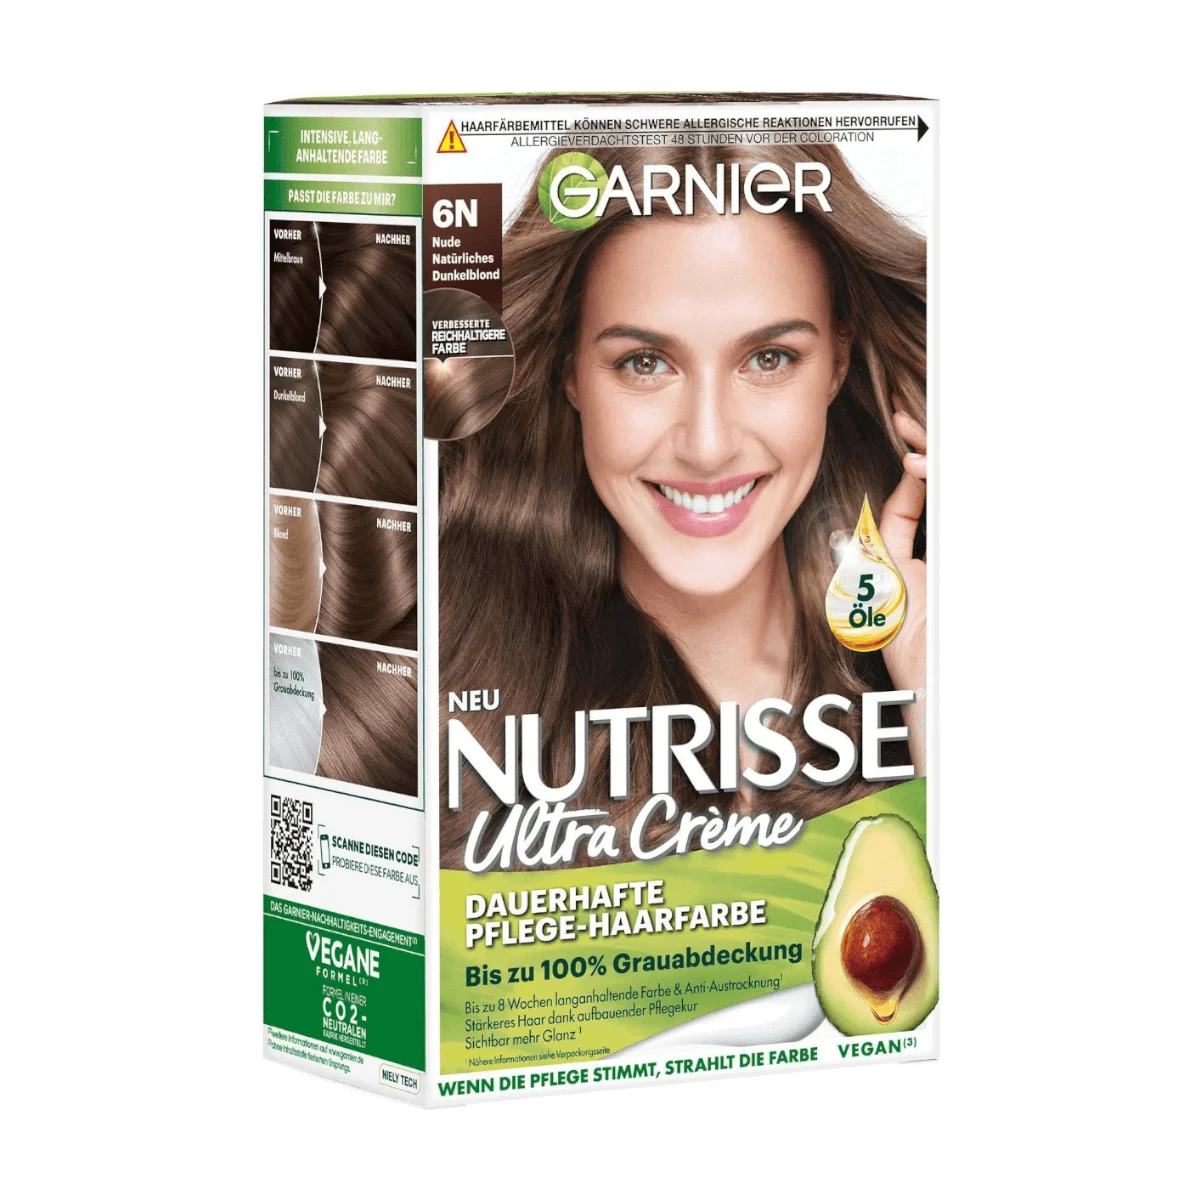 Garnier Nutrisse Creme 6N Nude Natürliches Dunkelblond | After-Sun-Cremes